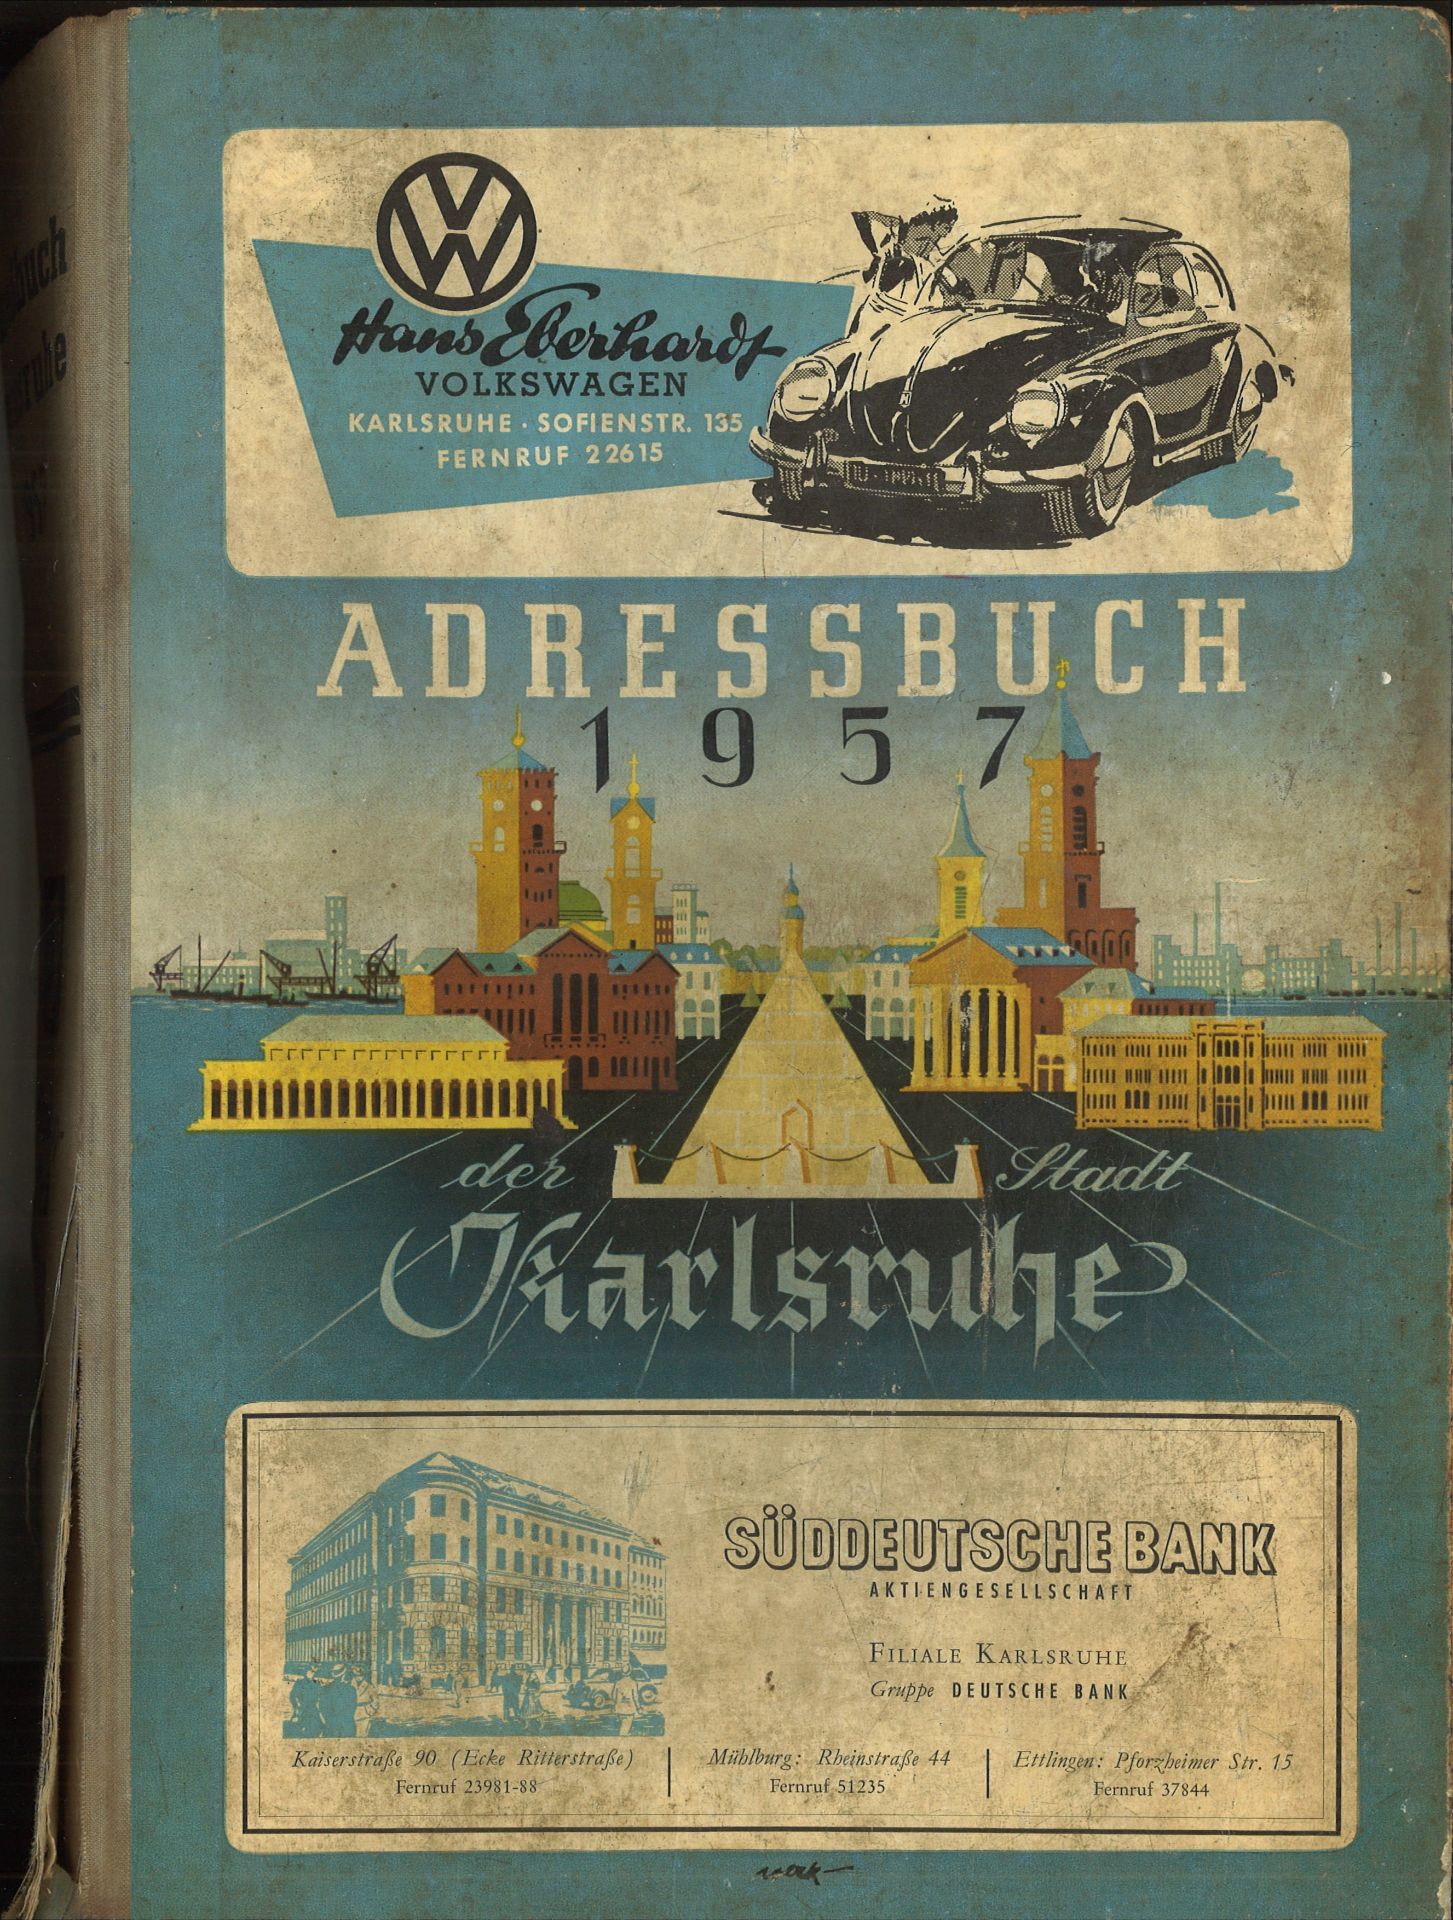 Adressbuch der Stadt Karlsruhe von 1957, achtzigster Jahrgang, Einband beschädigt und einige lose